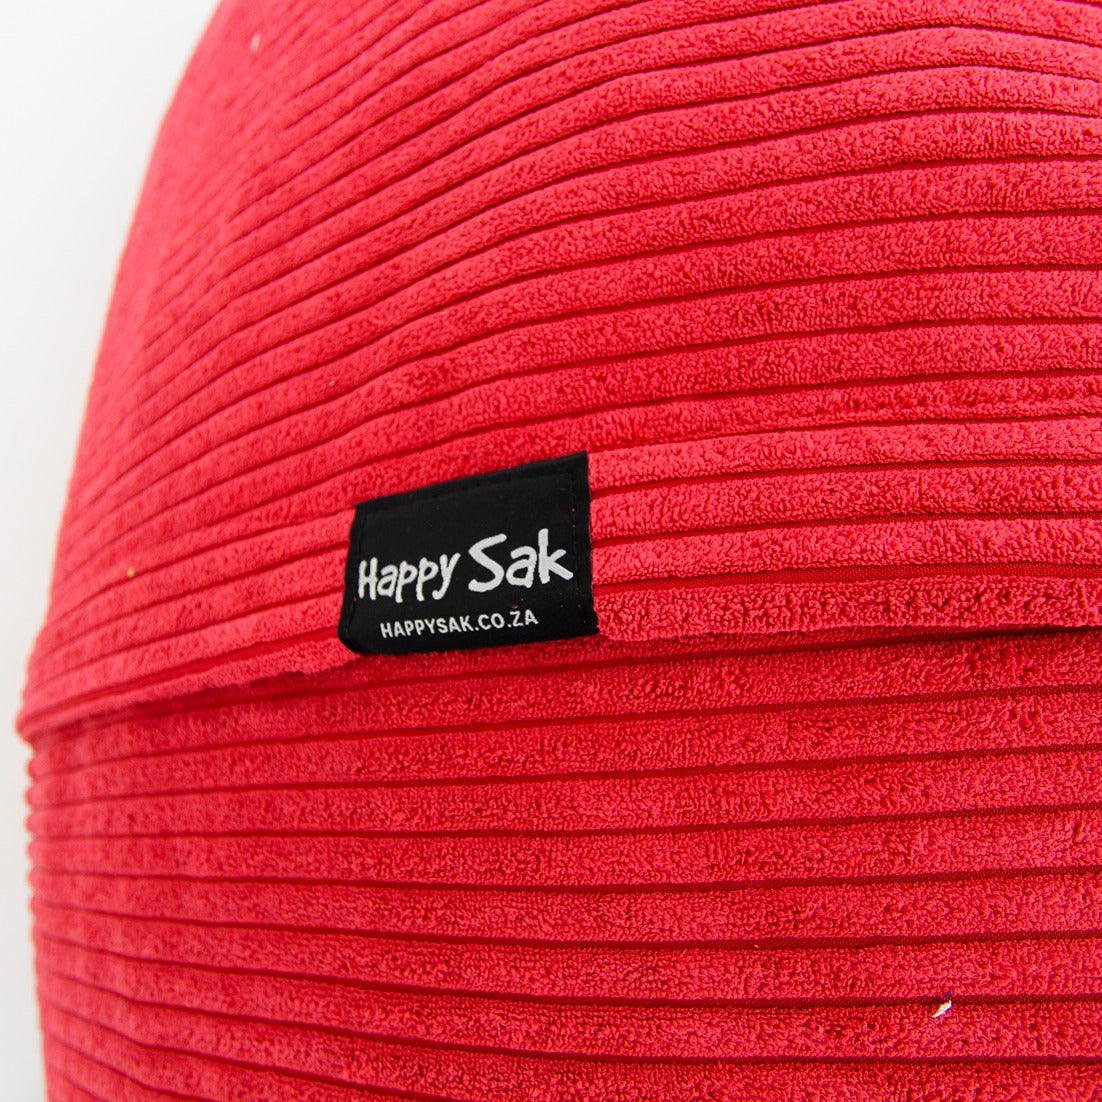 XXXL Sak Red Corduroy - Happy Sak SA